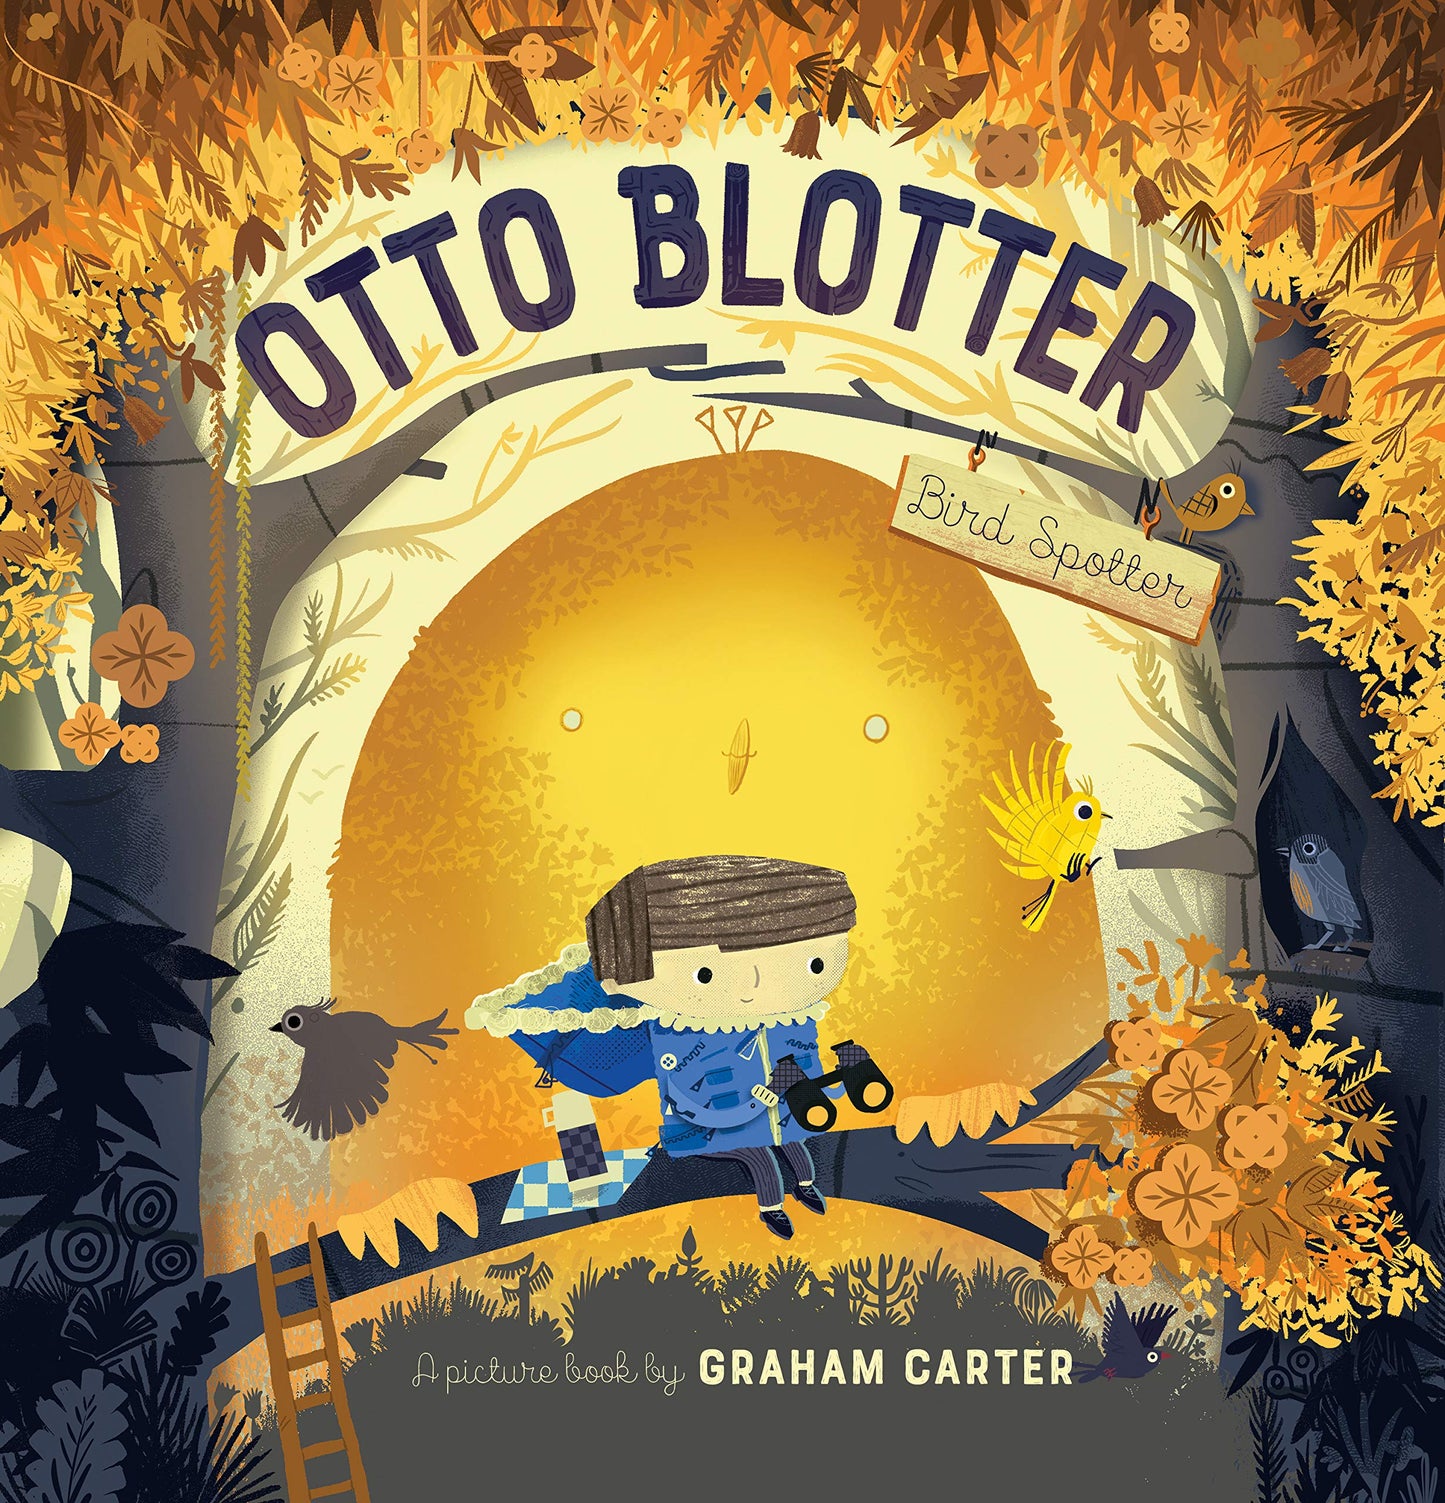 Otto Blotter Bird Spotter by Graham Carter